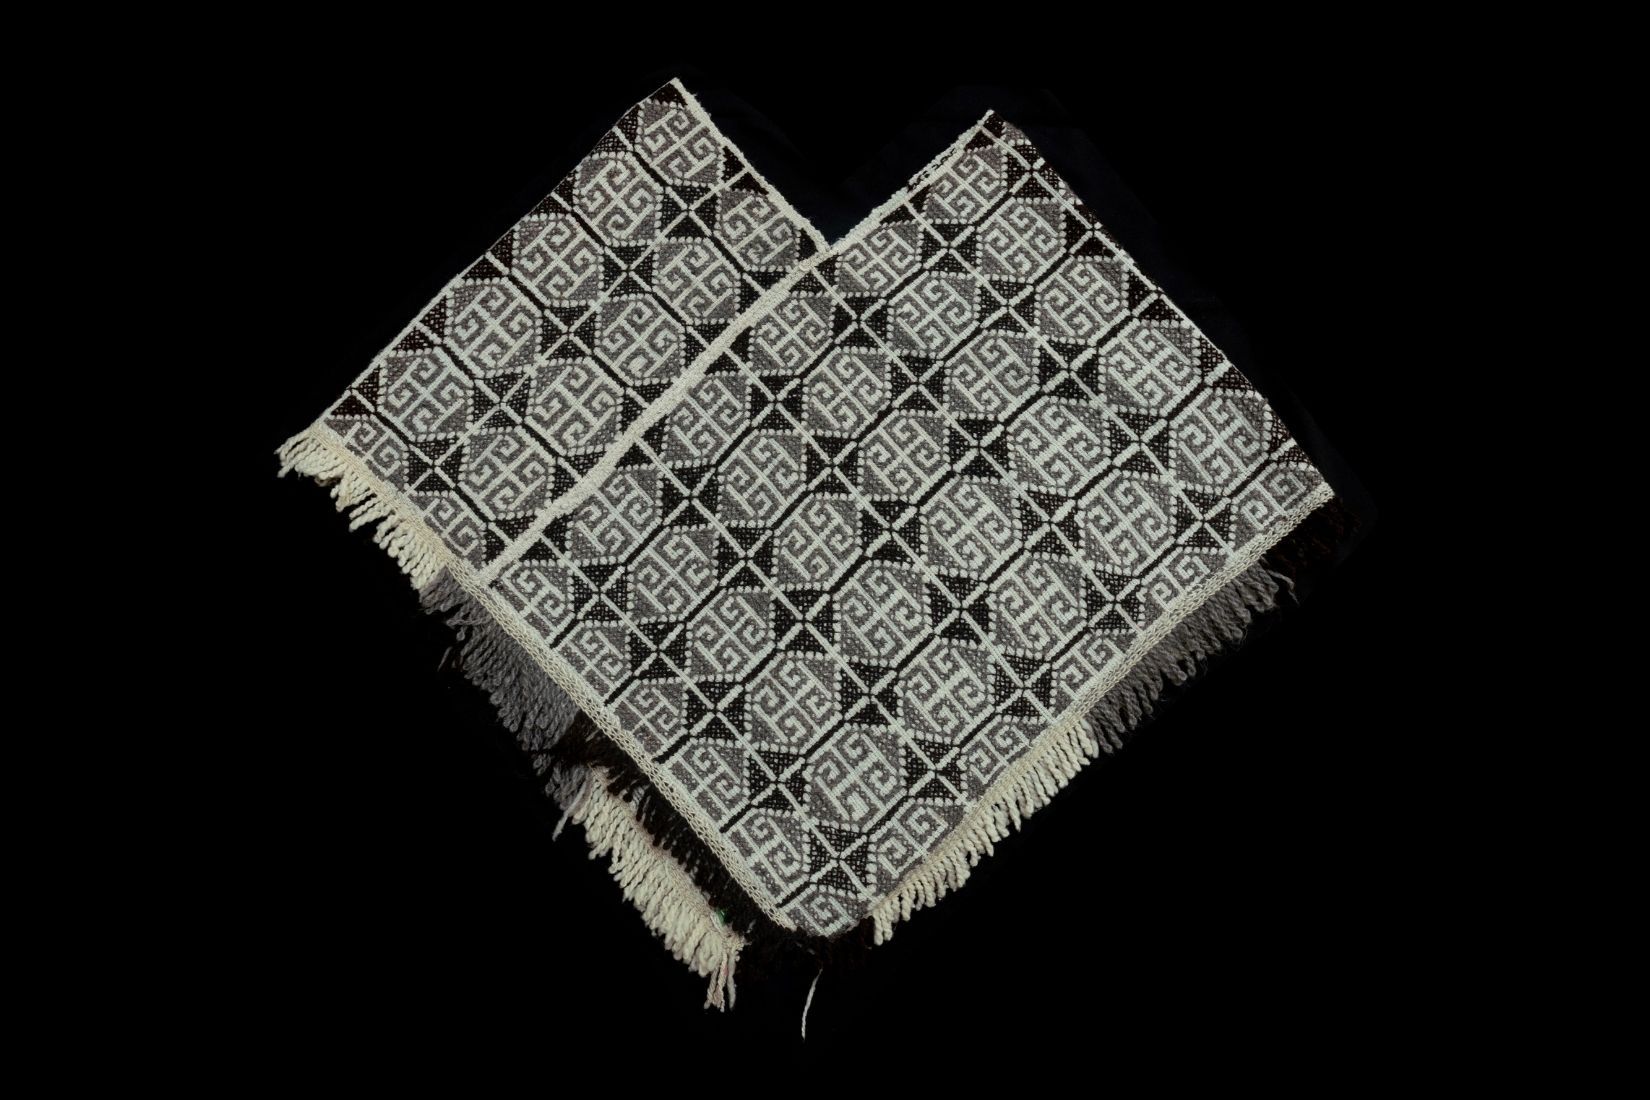 Quexquémetl de lana natural tejida y bordada. Artesano desconocido. Pátzcuaro, Mich. Donante Cecilia Occell. Col. AmigosMAP. (Foto: EKV).